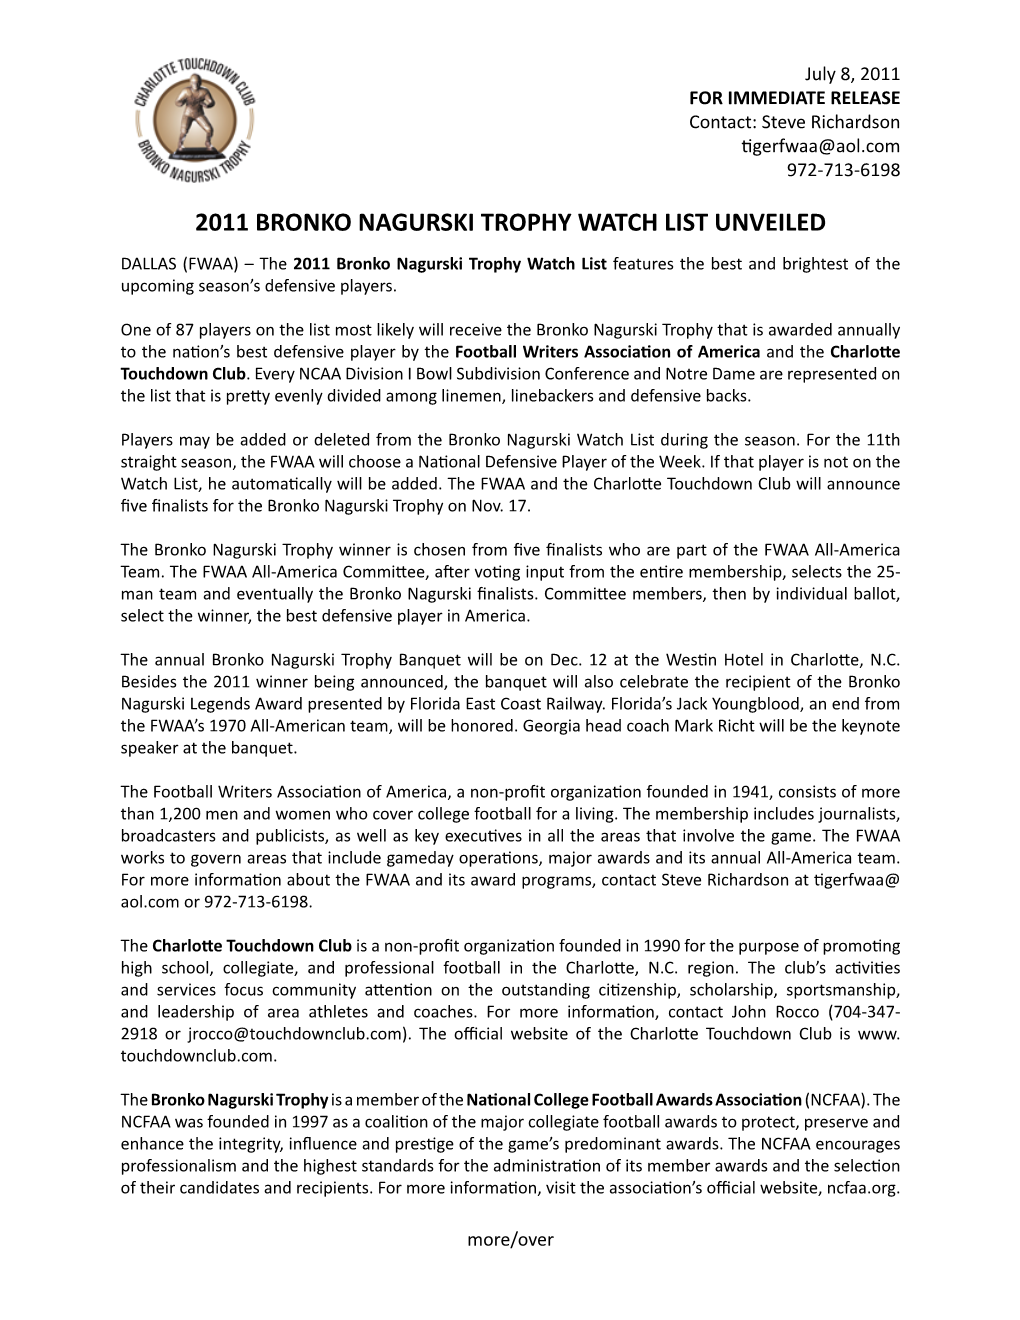 2011 Bronko Nagurski Trophy Watch List Unveiled